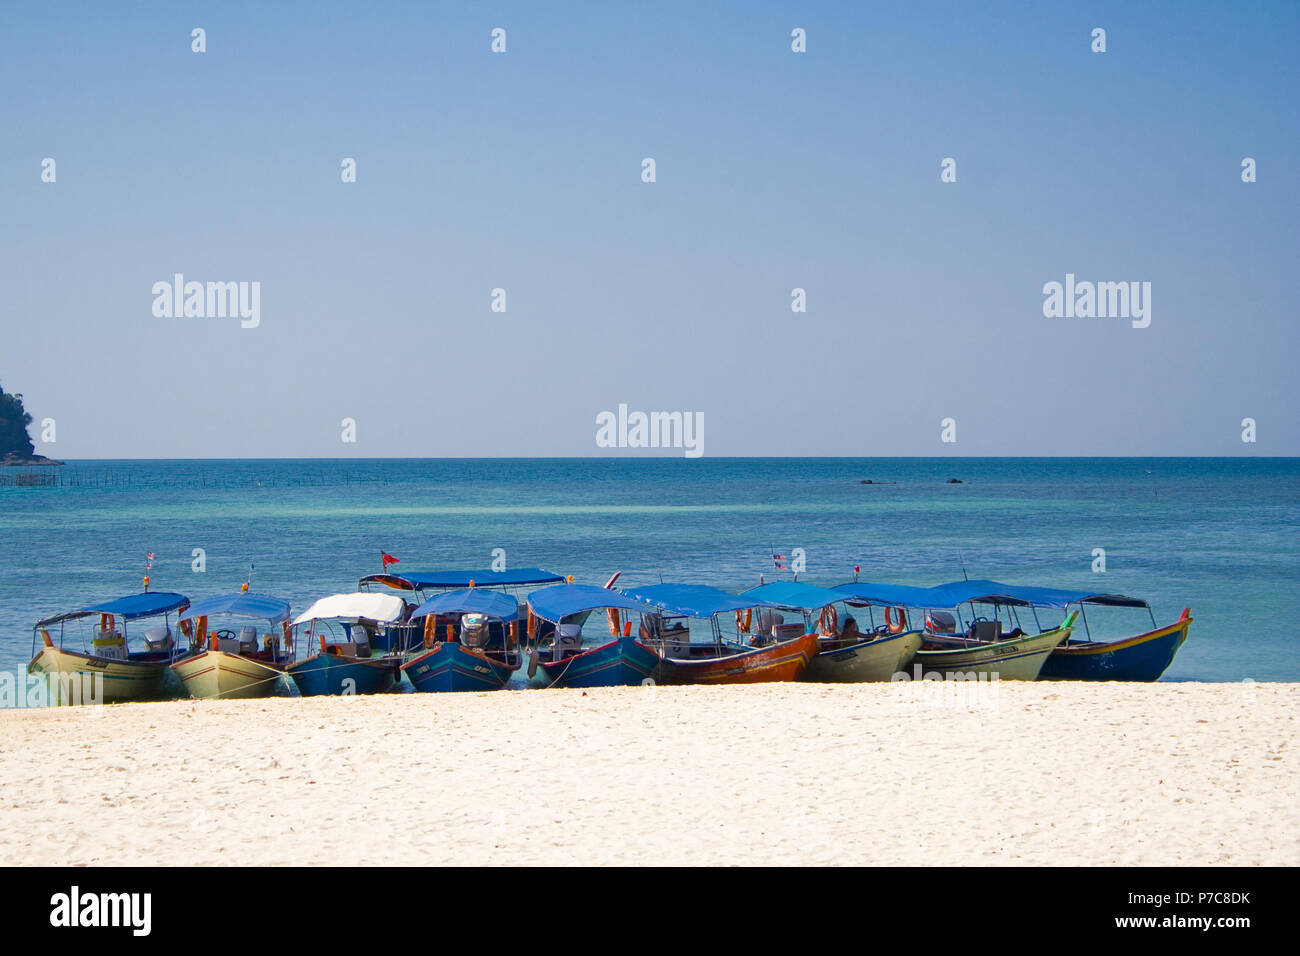 Plusieurs bateaux à couvert, responsable de l'afflux des touristes, amarré à côté de l'autre sur le rivage de sable blanc de Pulau Beras Basah, une île... Banque D'Images